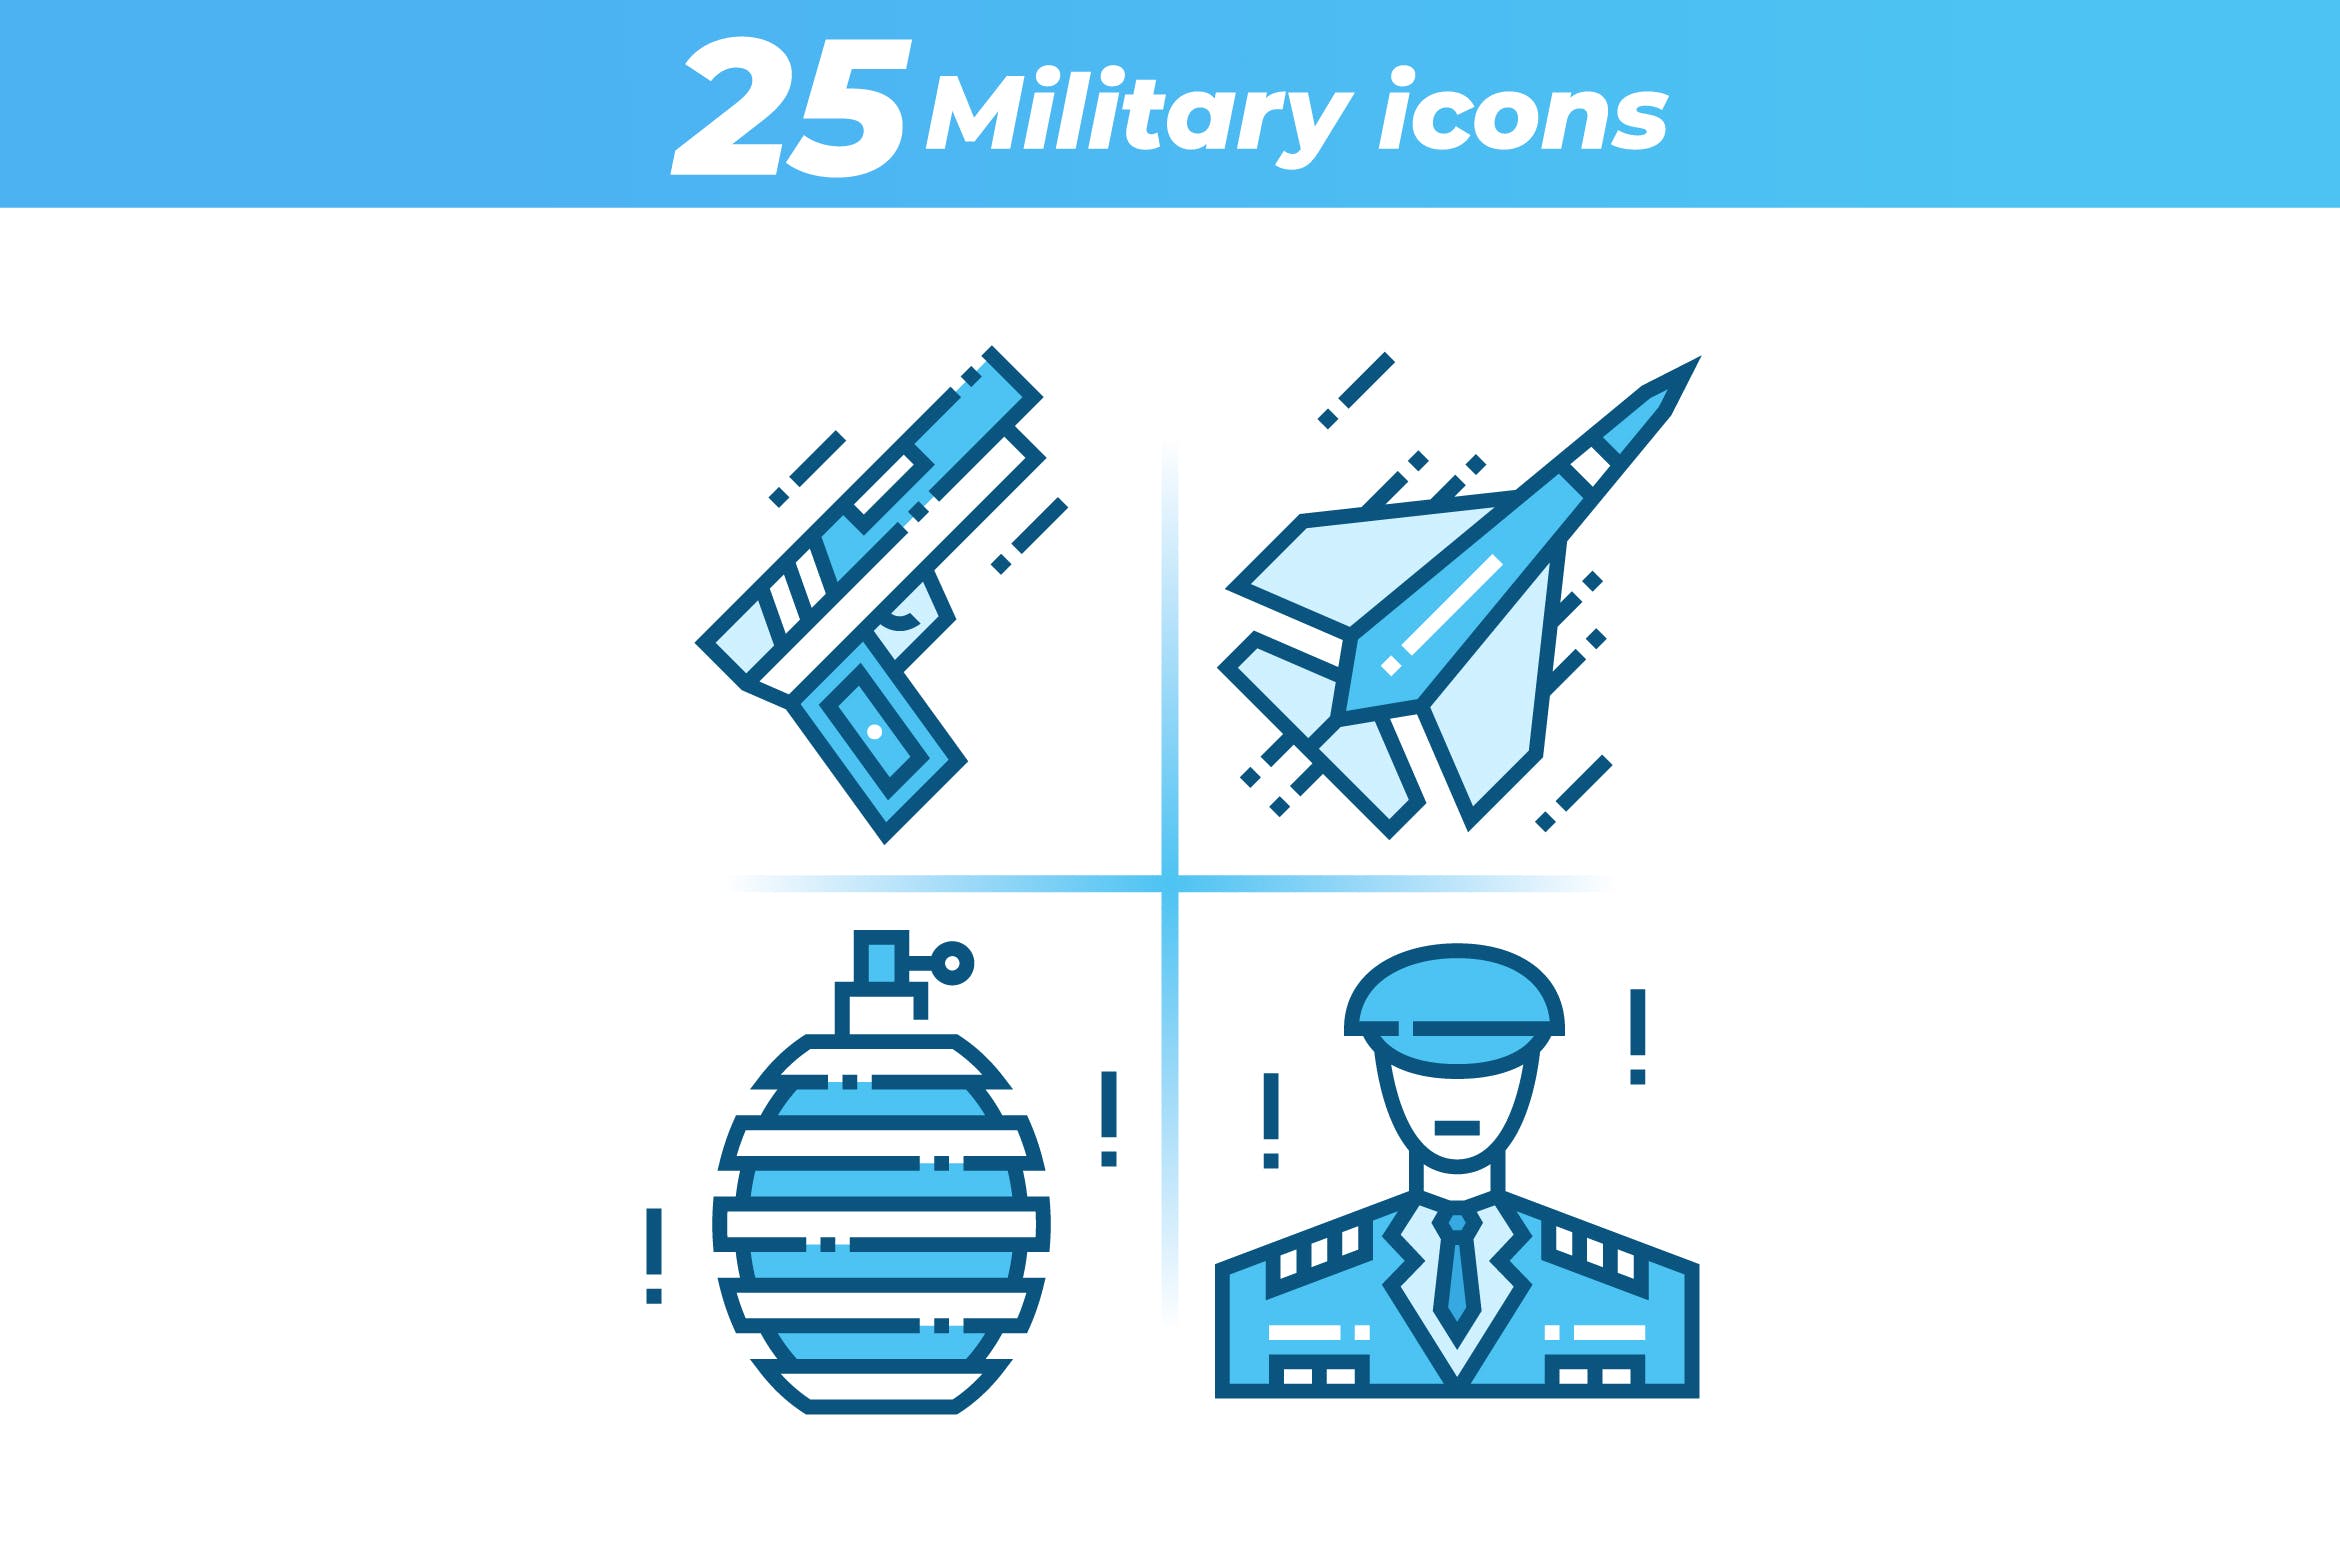 25枚军事主题矢量蚂蚁素材精选图标 25 Military Icons插图